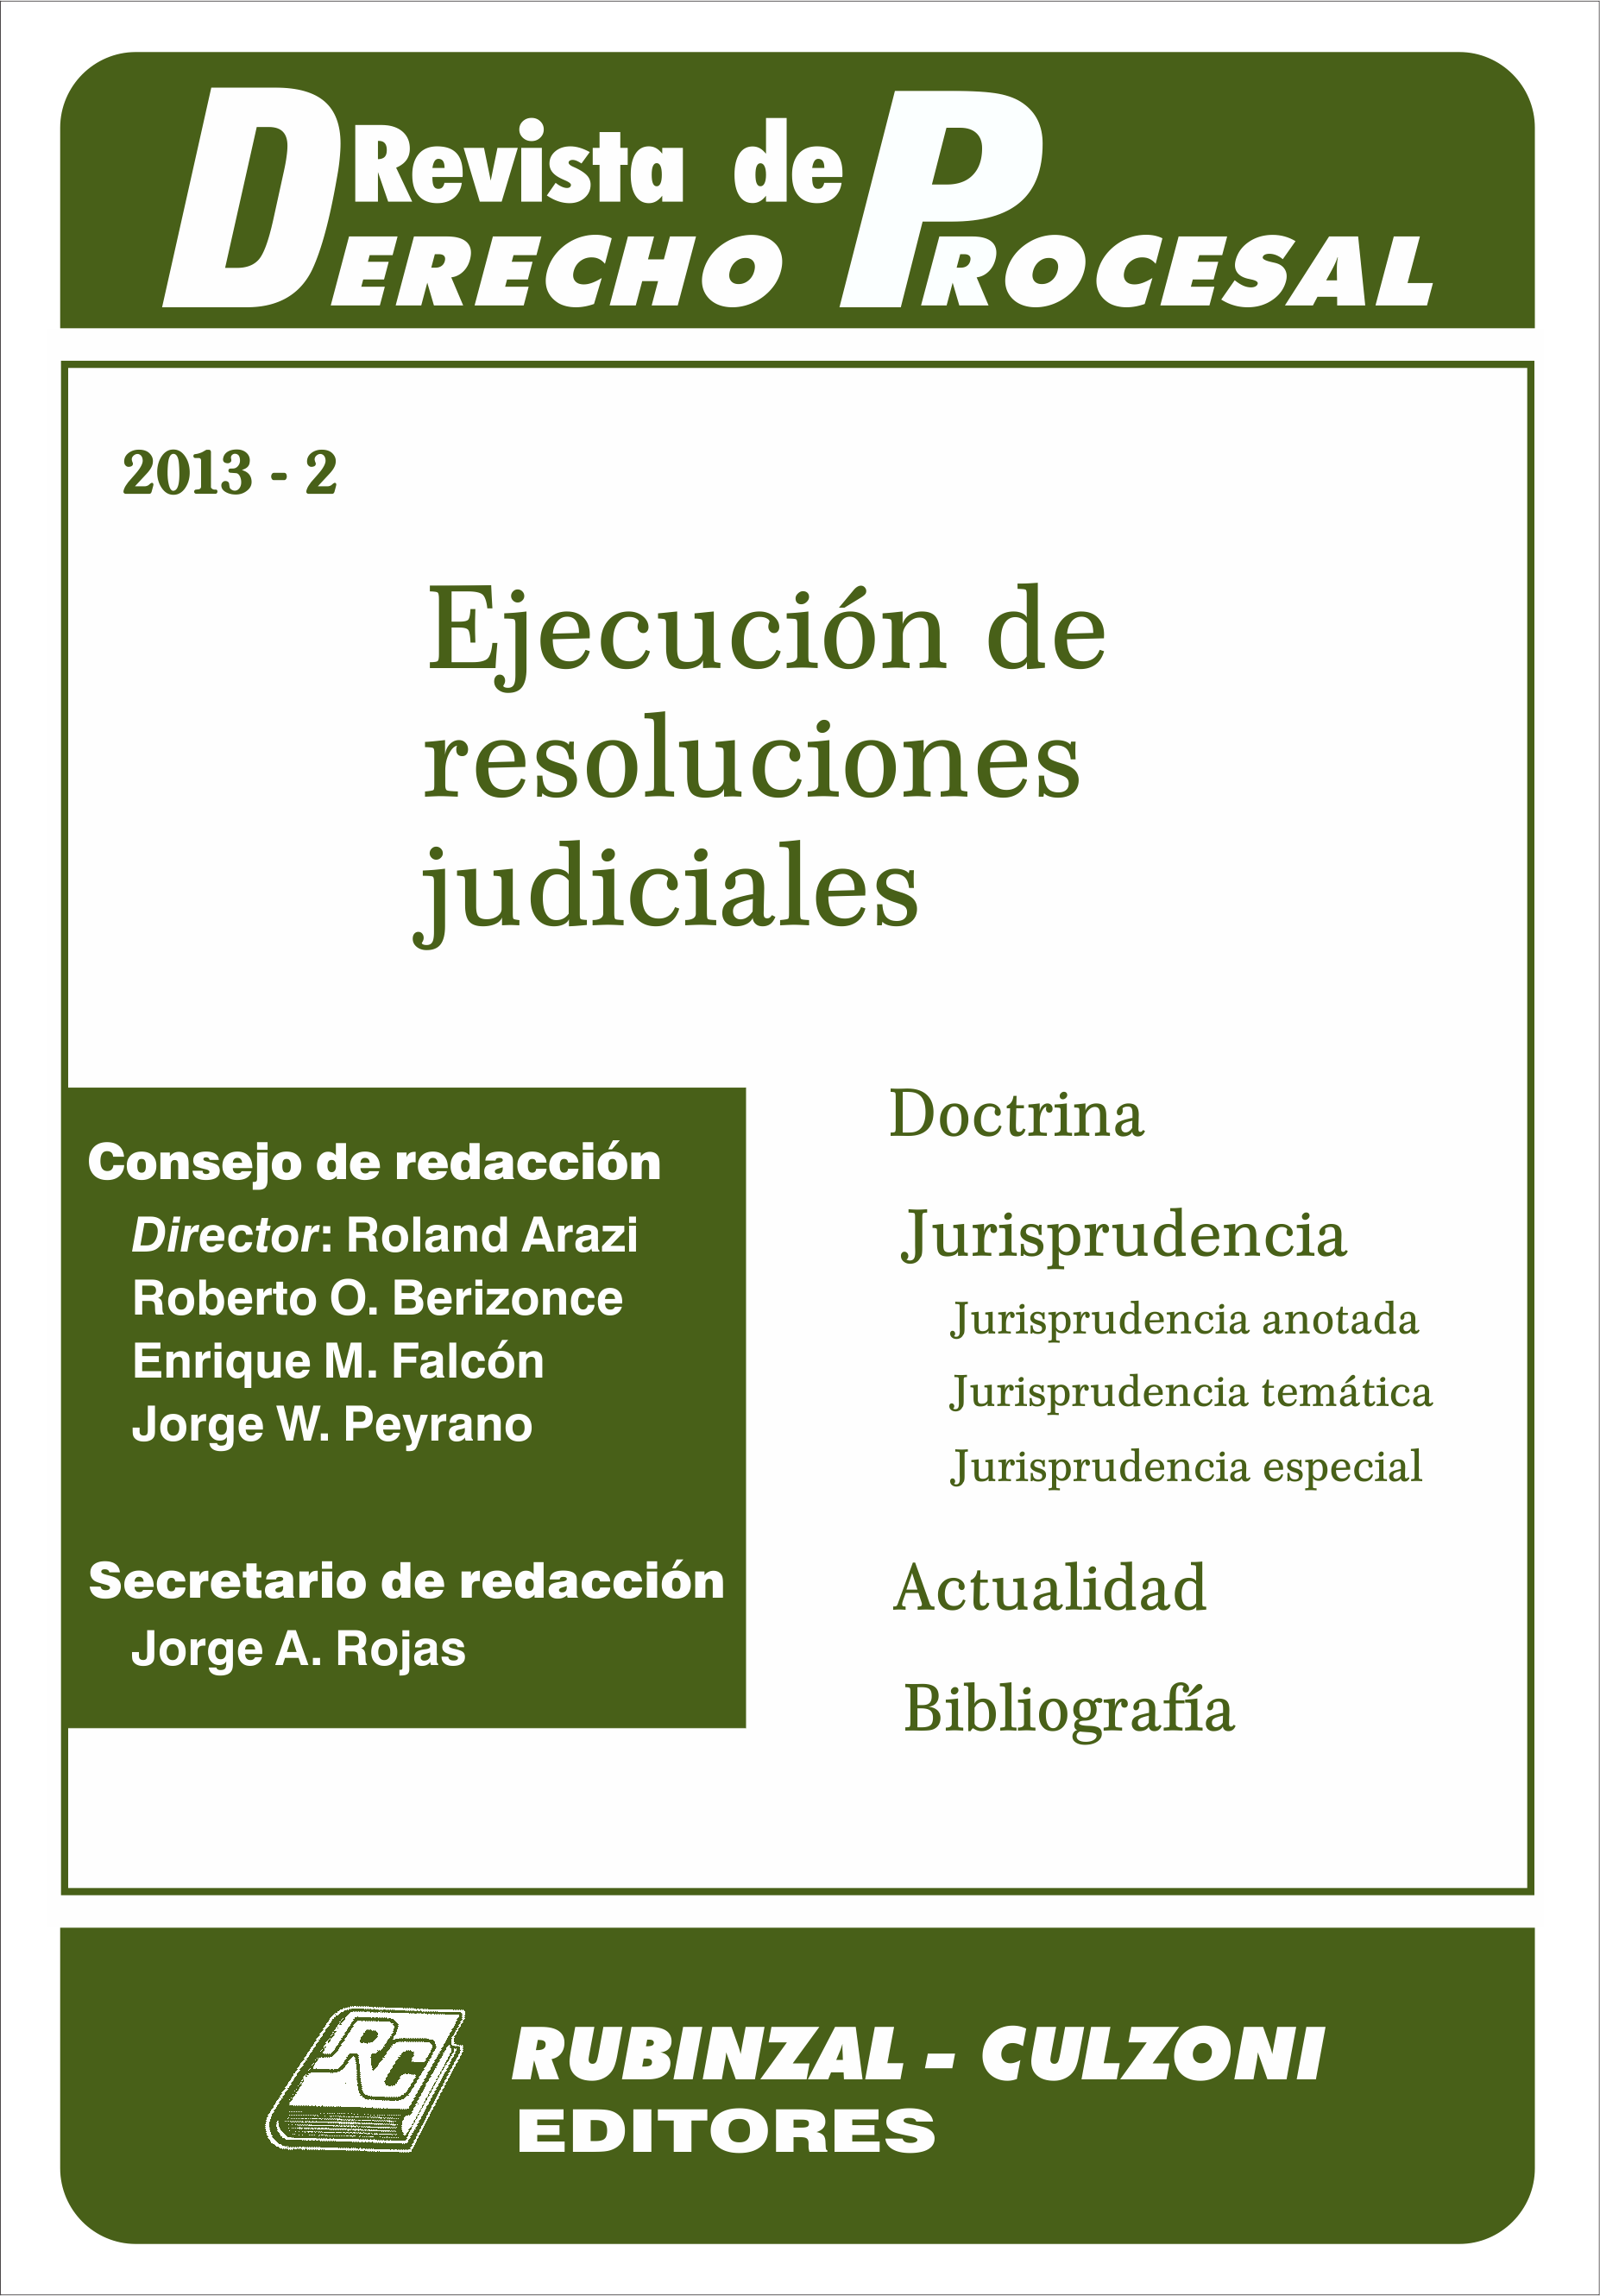 Revista de Derecho Procesal - Ejecución de resoluciones judiciales.